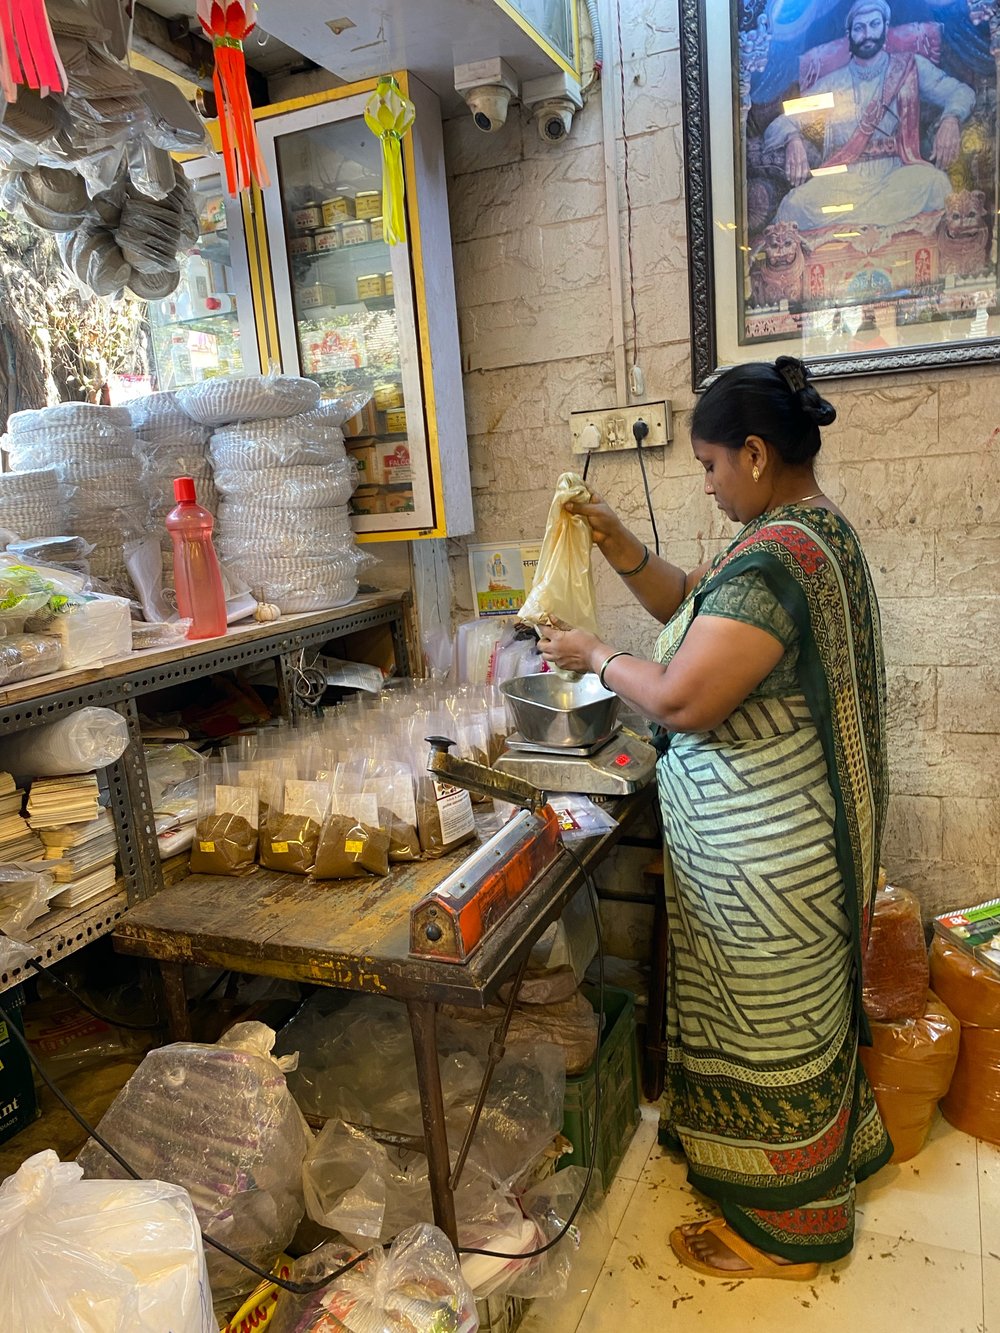 Mumbai Spice Market